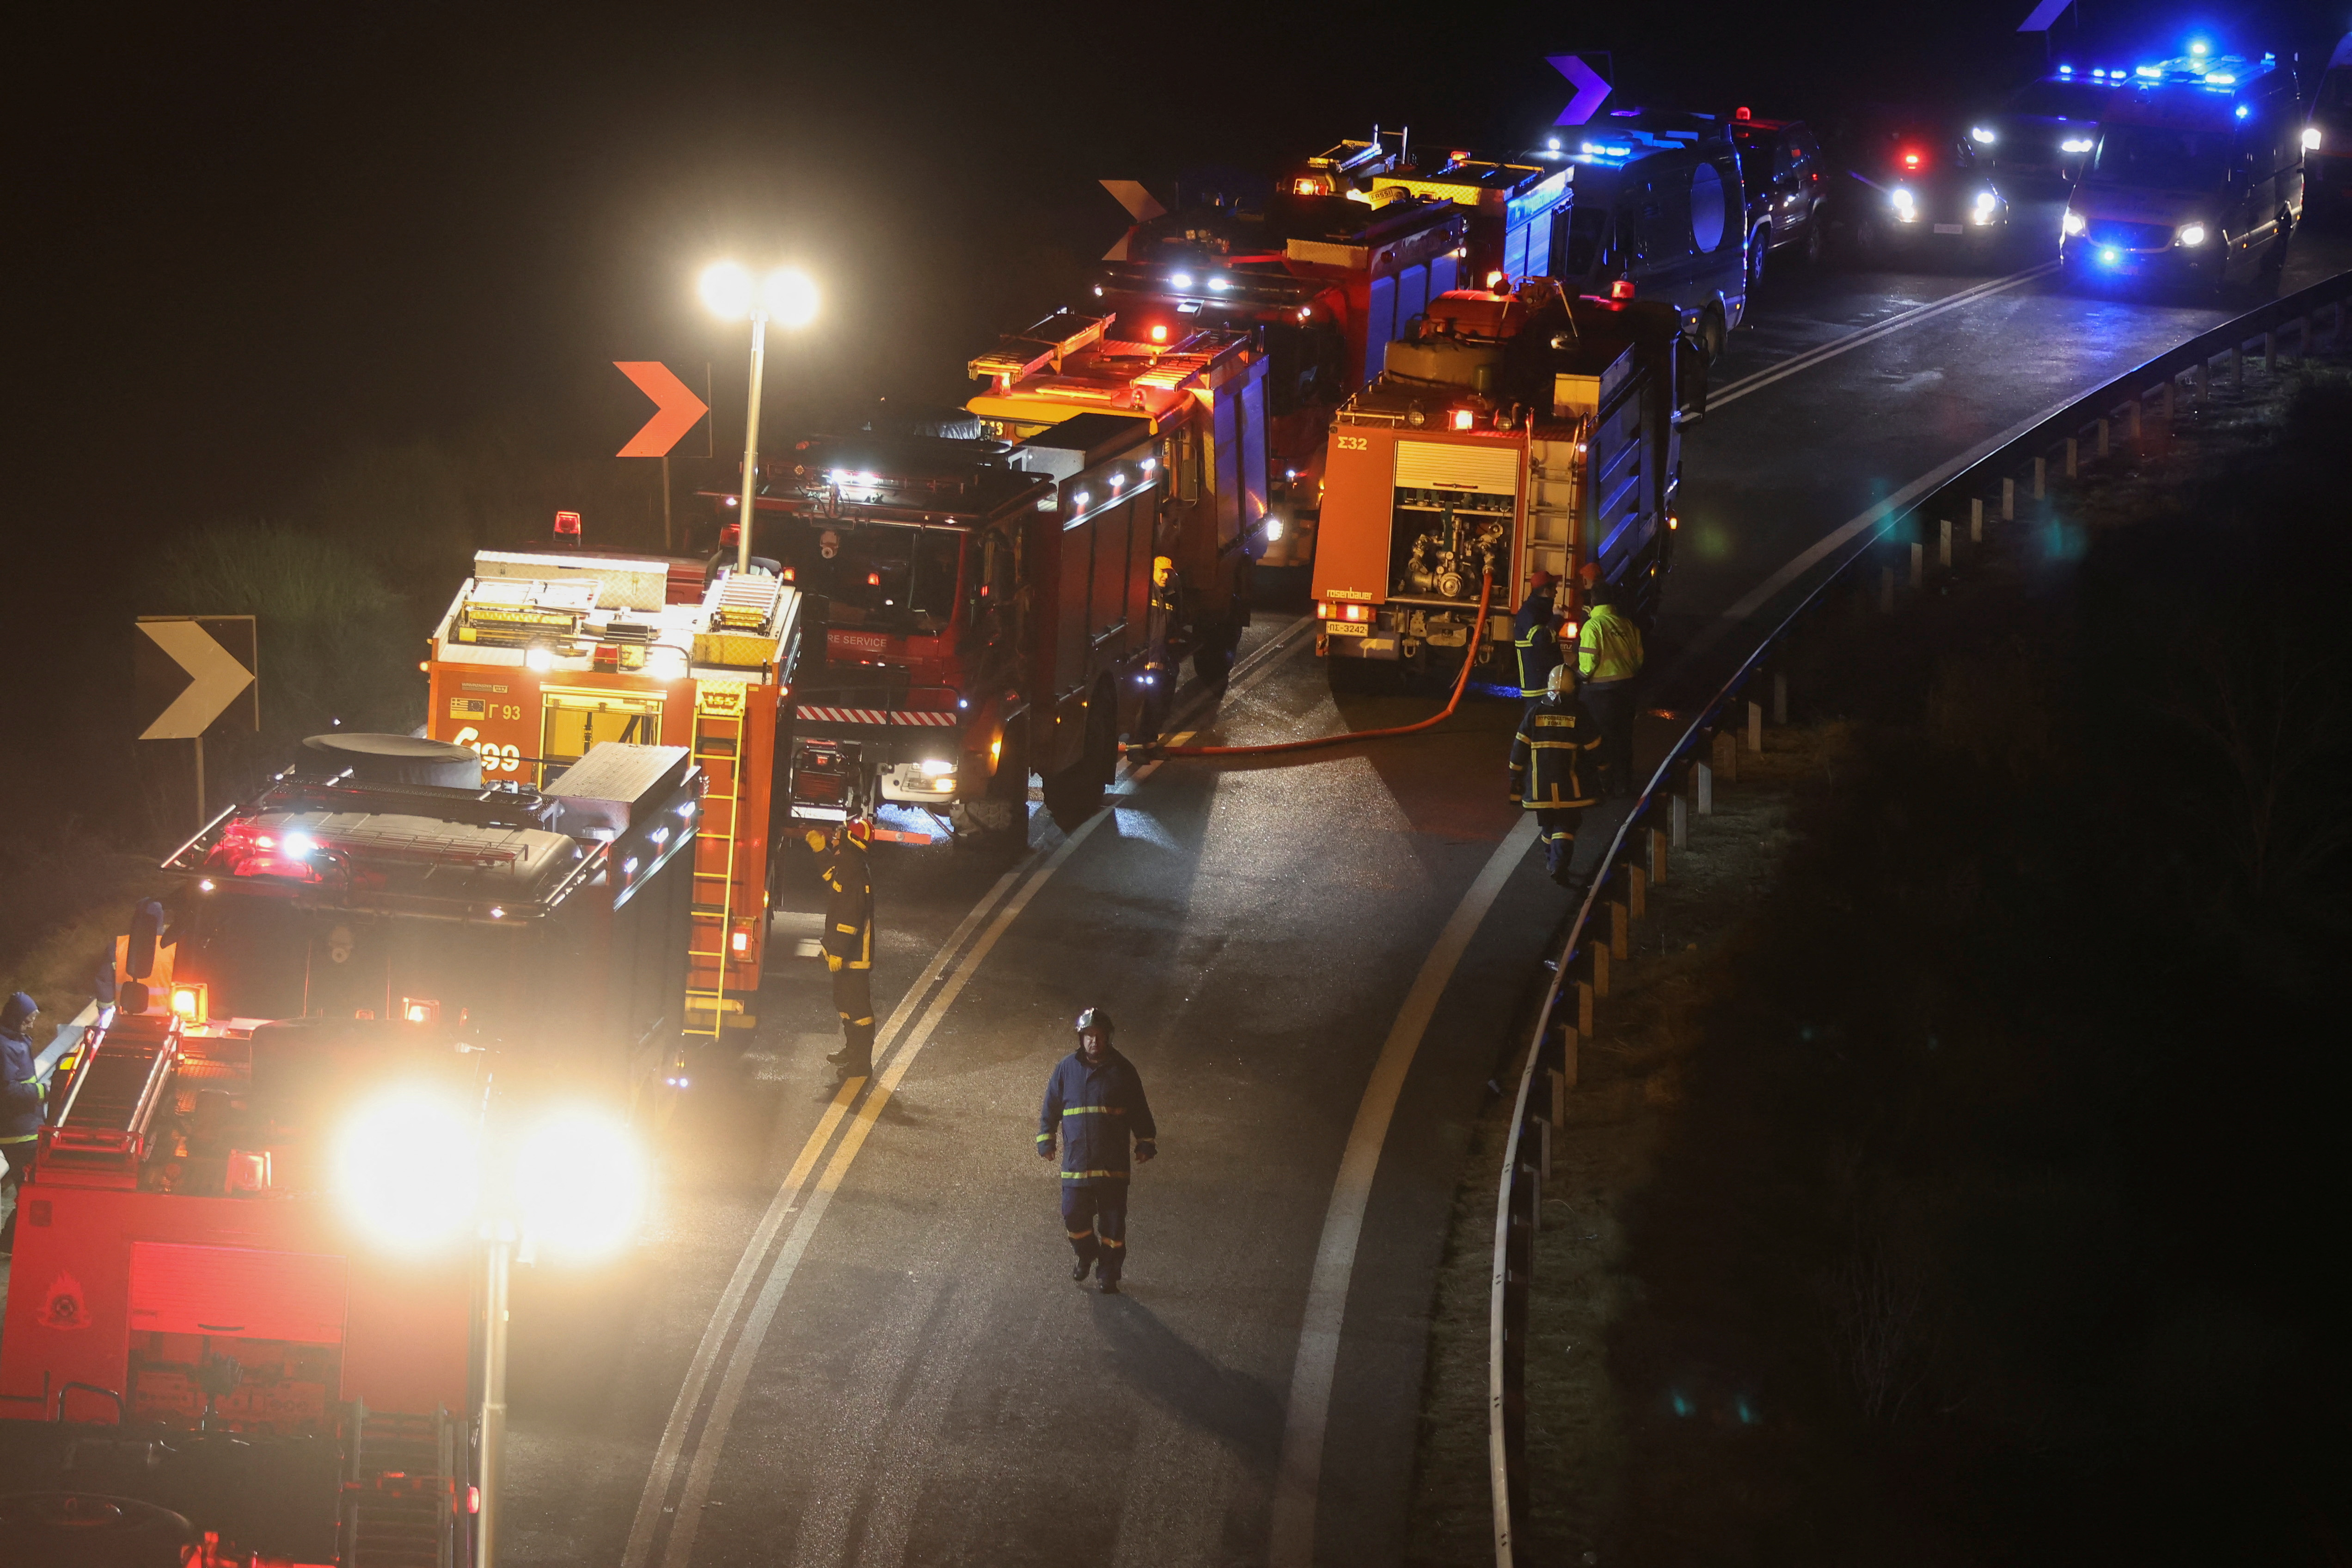 Alrededor de 150 bomberos, además de 40 ambulancias, fueron movilizados, según los servicios de socorro griegos. También se desplazaron allí grúas y mecánicos para limpiar los escombros y levantar los vagones volcados. (REUTERS/Thanos Floulis)